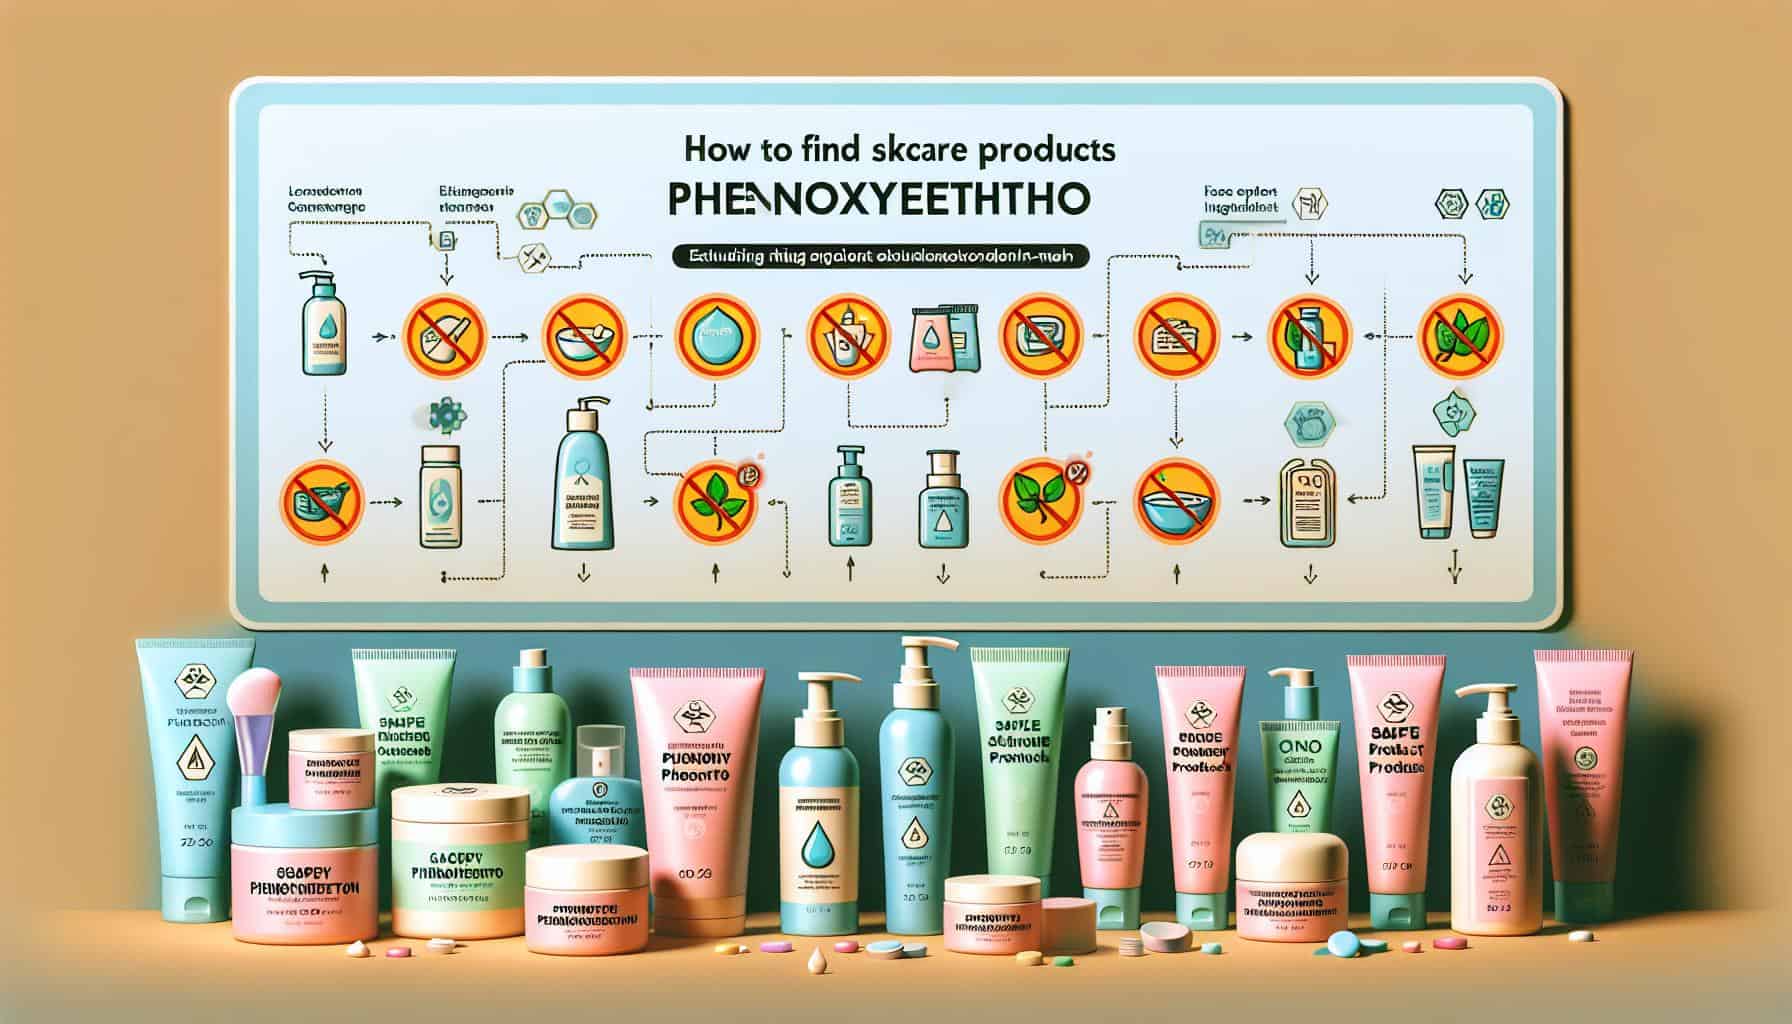 Skin Care Without Phenoxyethanol